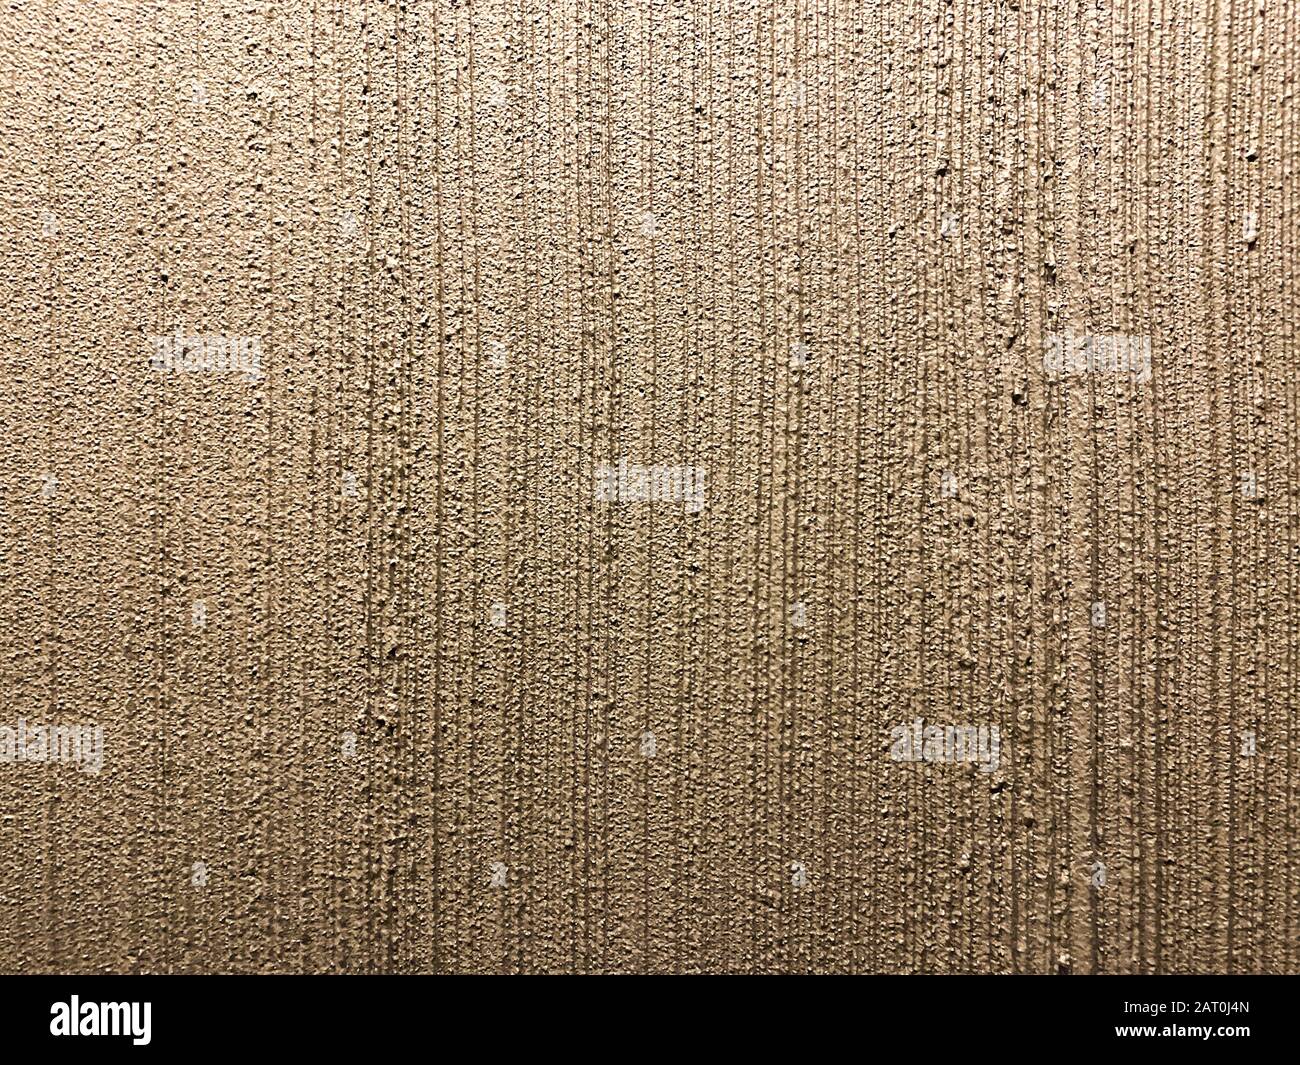 Textur der körnigen, verputzten Innenwand. Bronzefarbener gestreifter Putzhintergrund Stockfoto